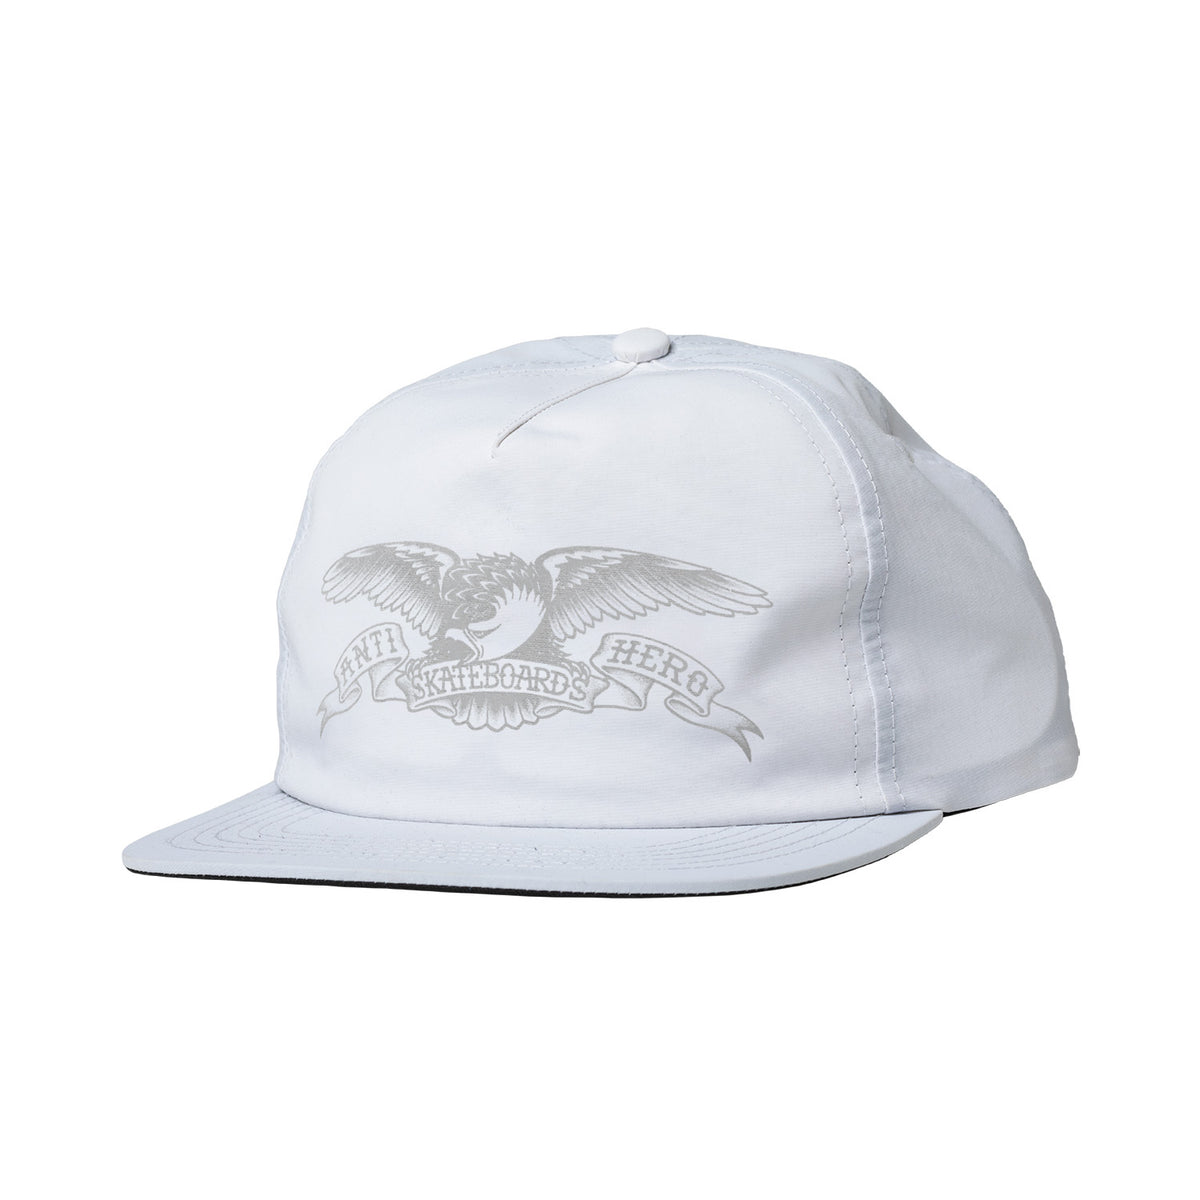 Antihero Basic Eagle Snapback Hat